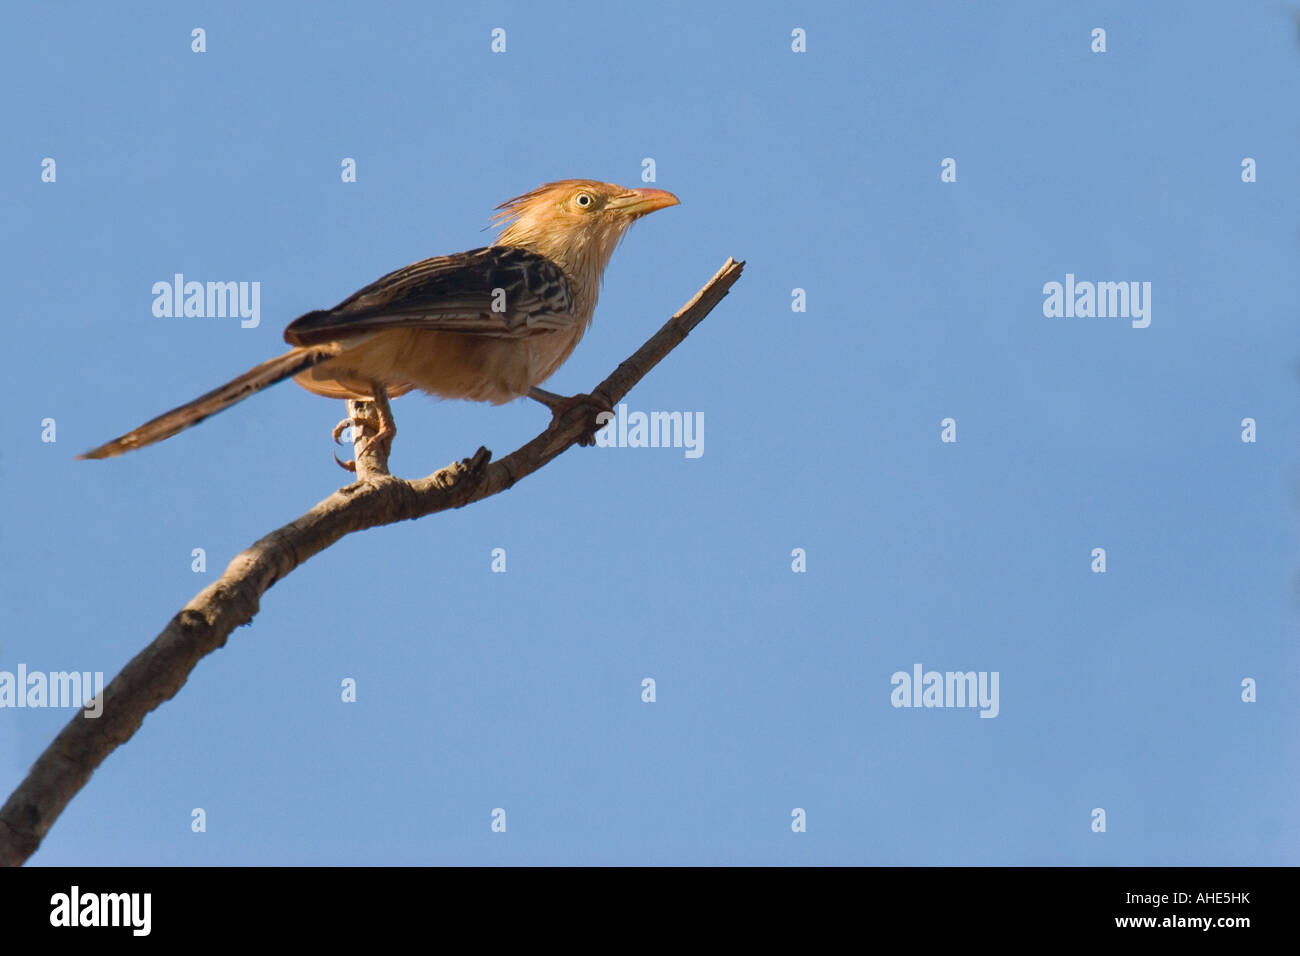 Guira cuckoo contre le ciel bleu. Photo prise dans le Cerrado brésilien, contre le ciel bleu. Banque D'Images